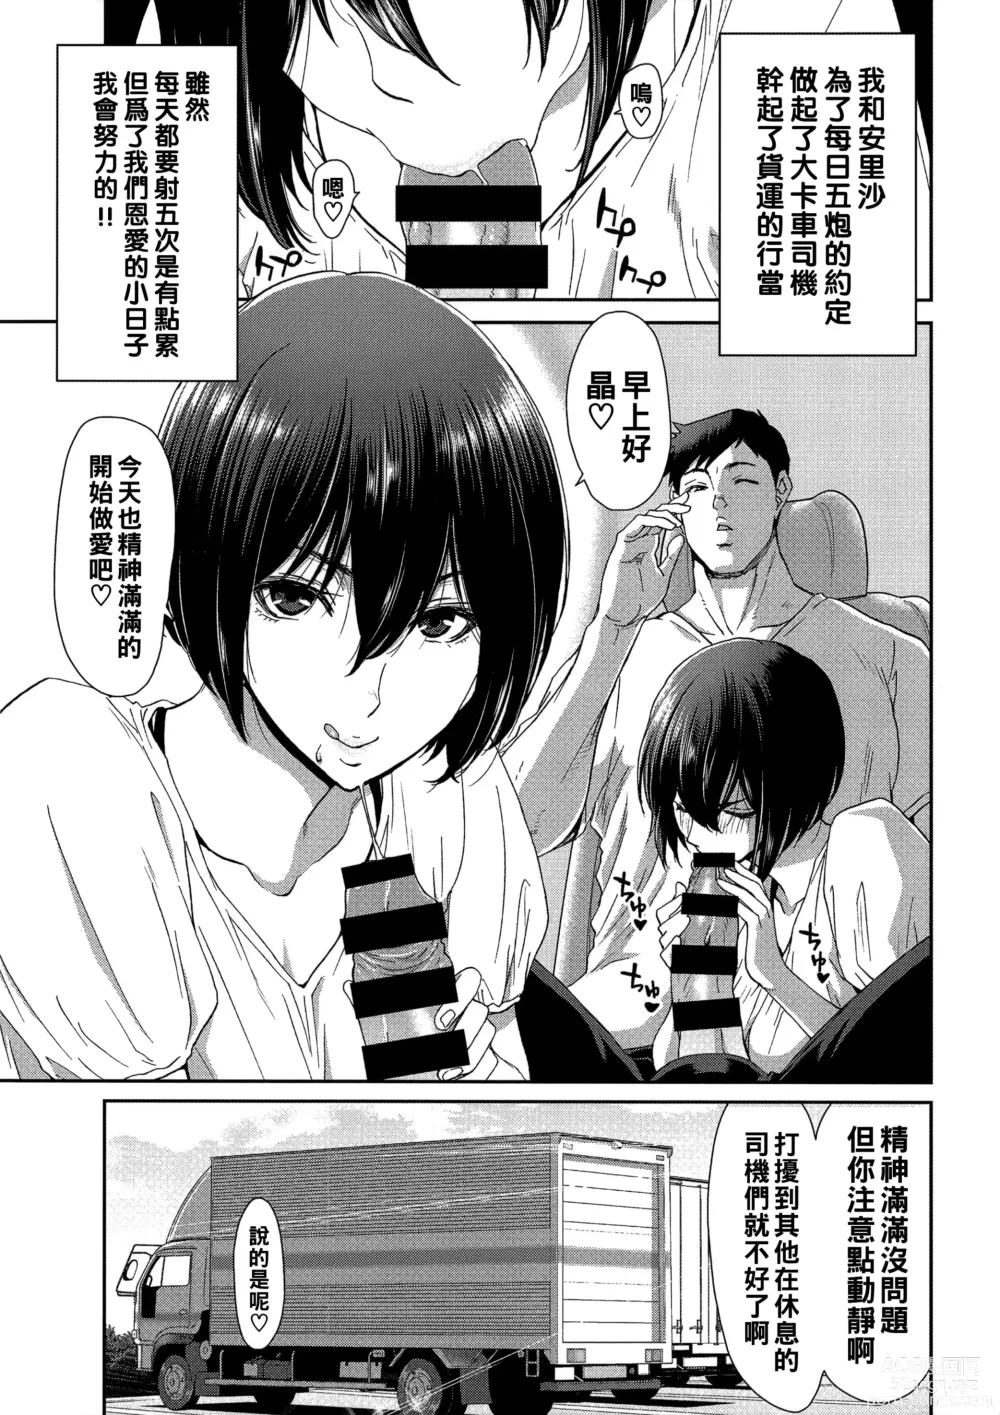 Page 183 of manga Iede Onna o Hirottara - When I picked up a runaway girl. + Melonbooks Gentei Tokuten   Otona no Iede Gojitsudan Sono Ato no Arisa to Akira